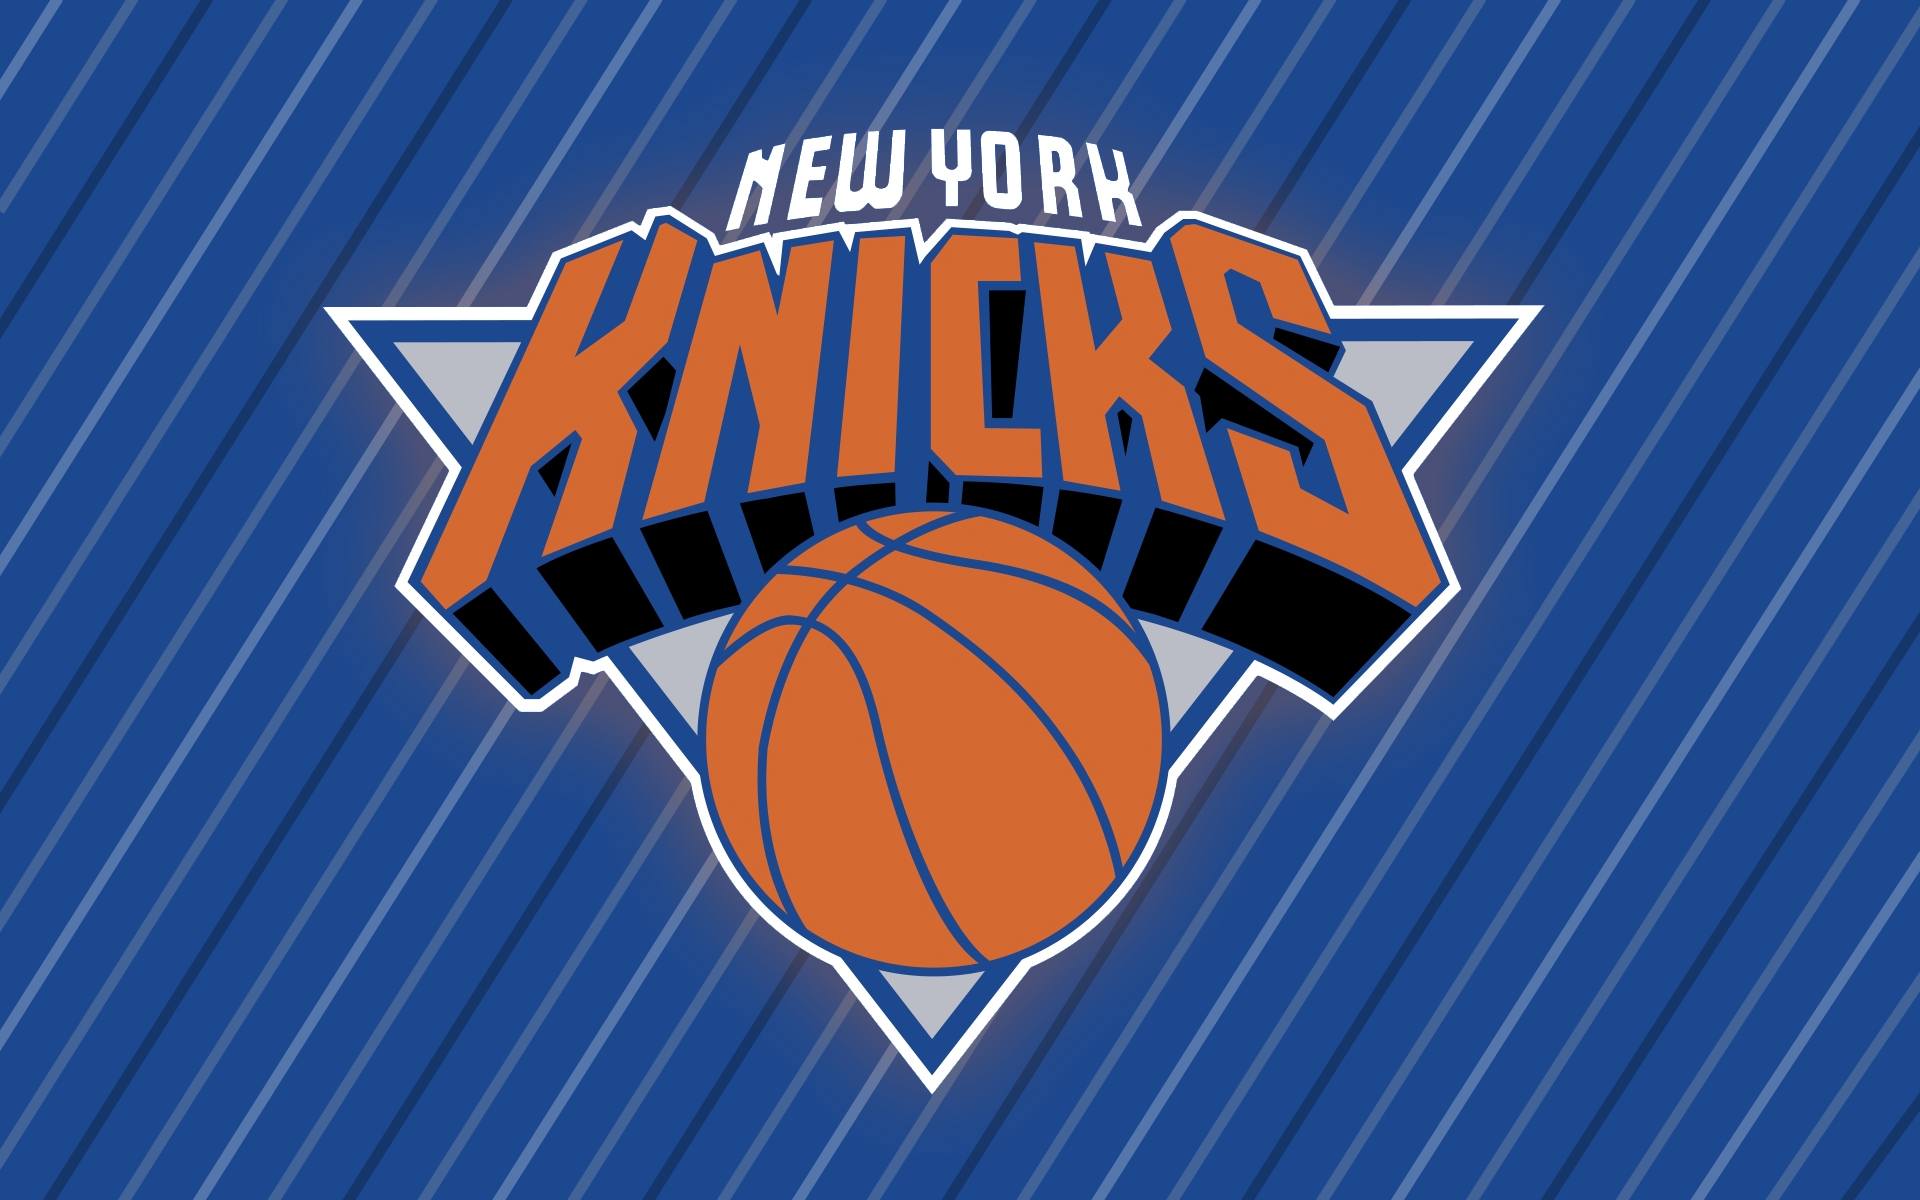 New York Knicks wallpaper - 425009